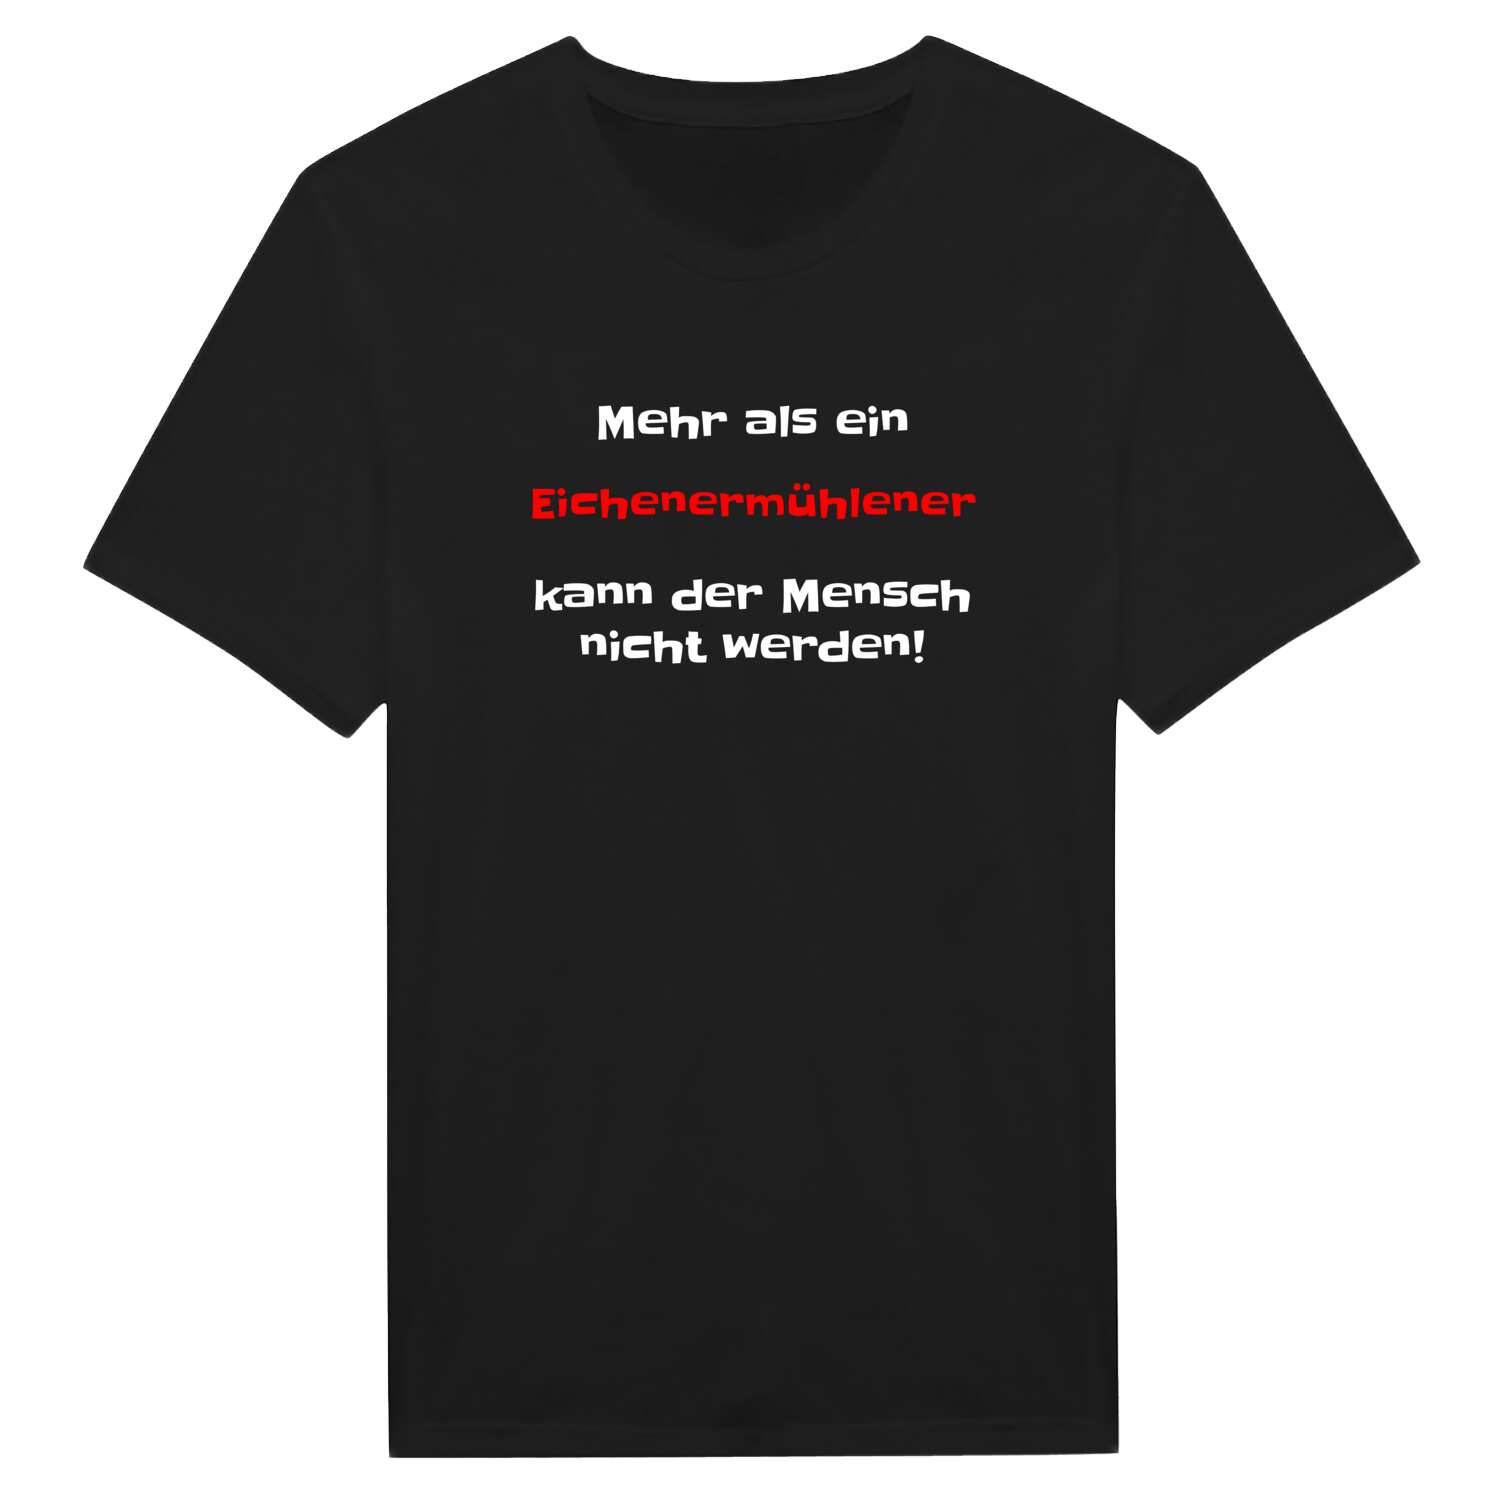 Eichenermühle T-Shirt »Mehr als ein«